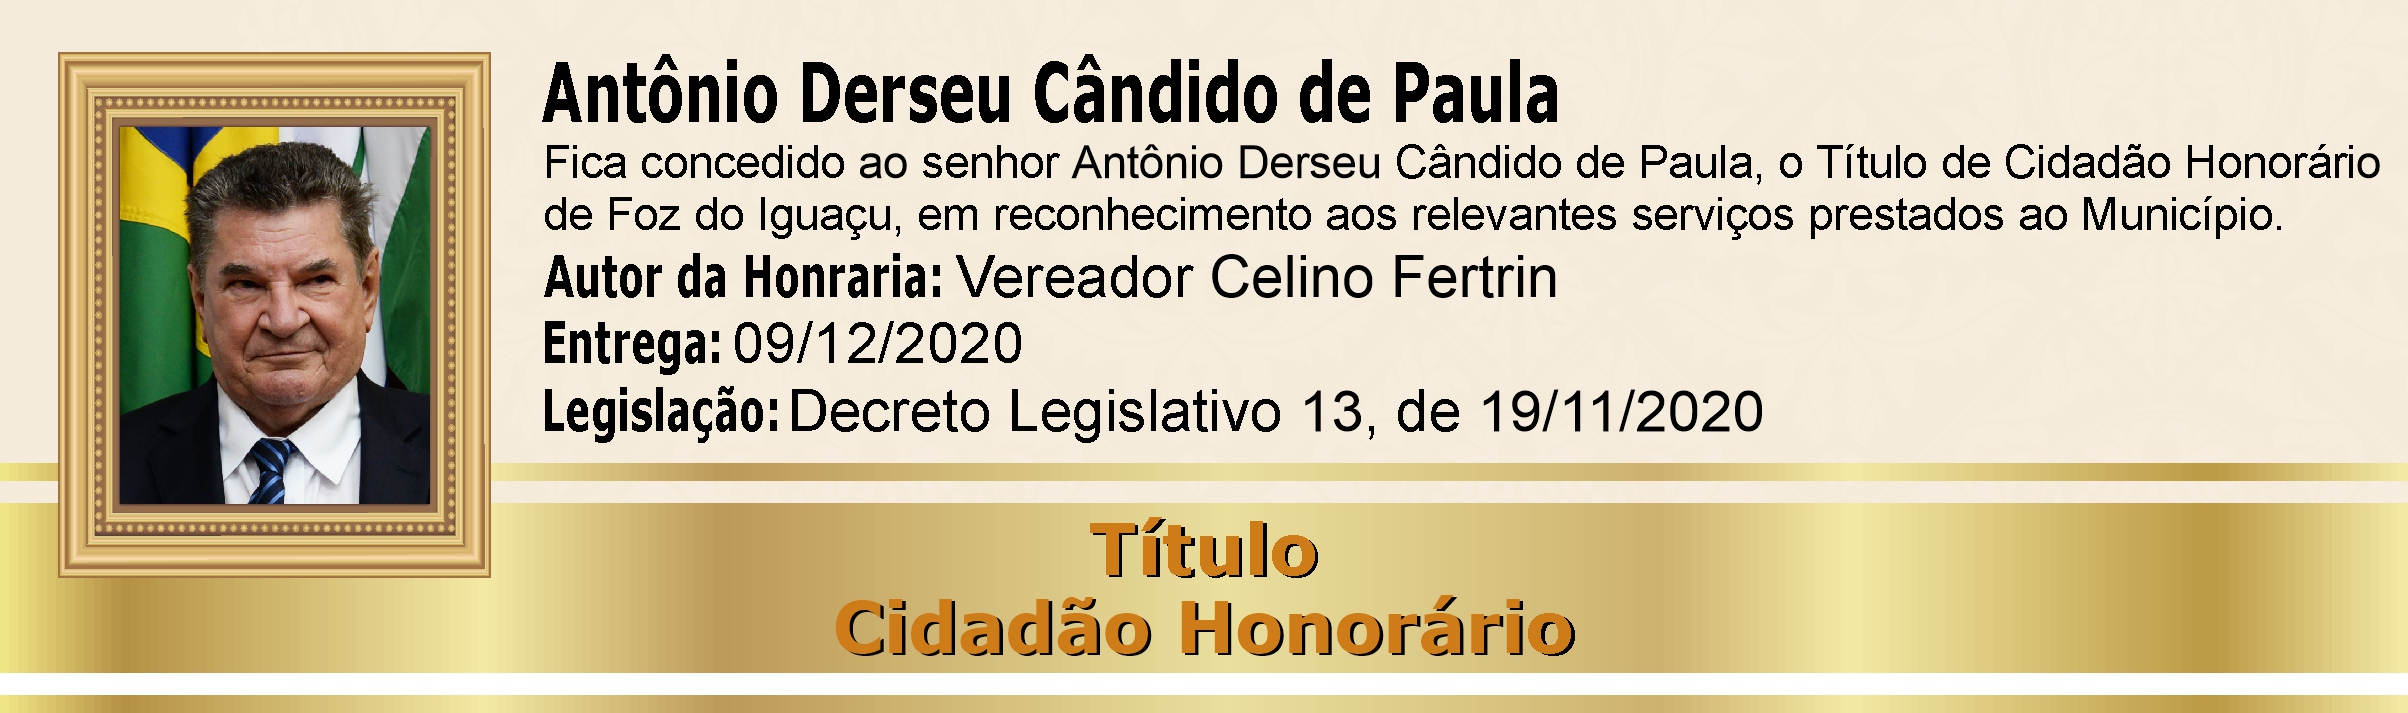 Antônio Derseu Cândido de Paula